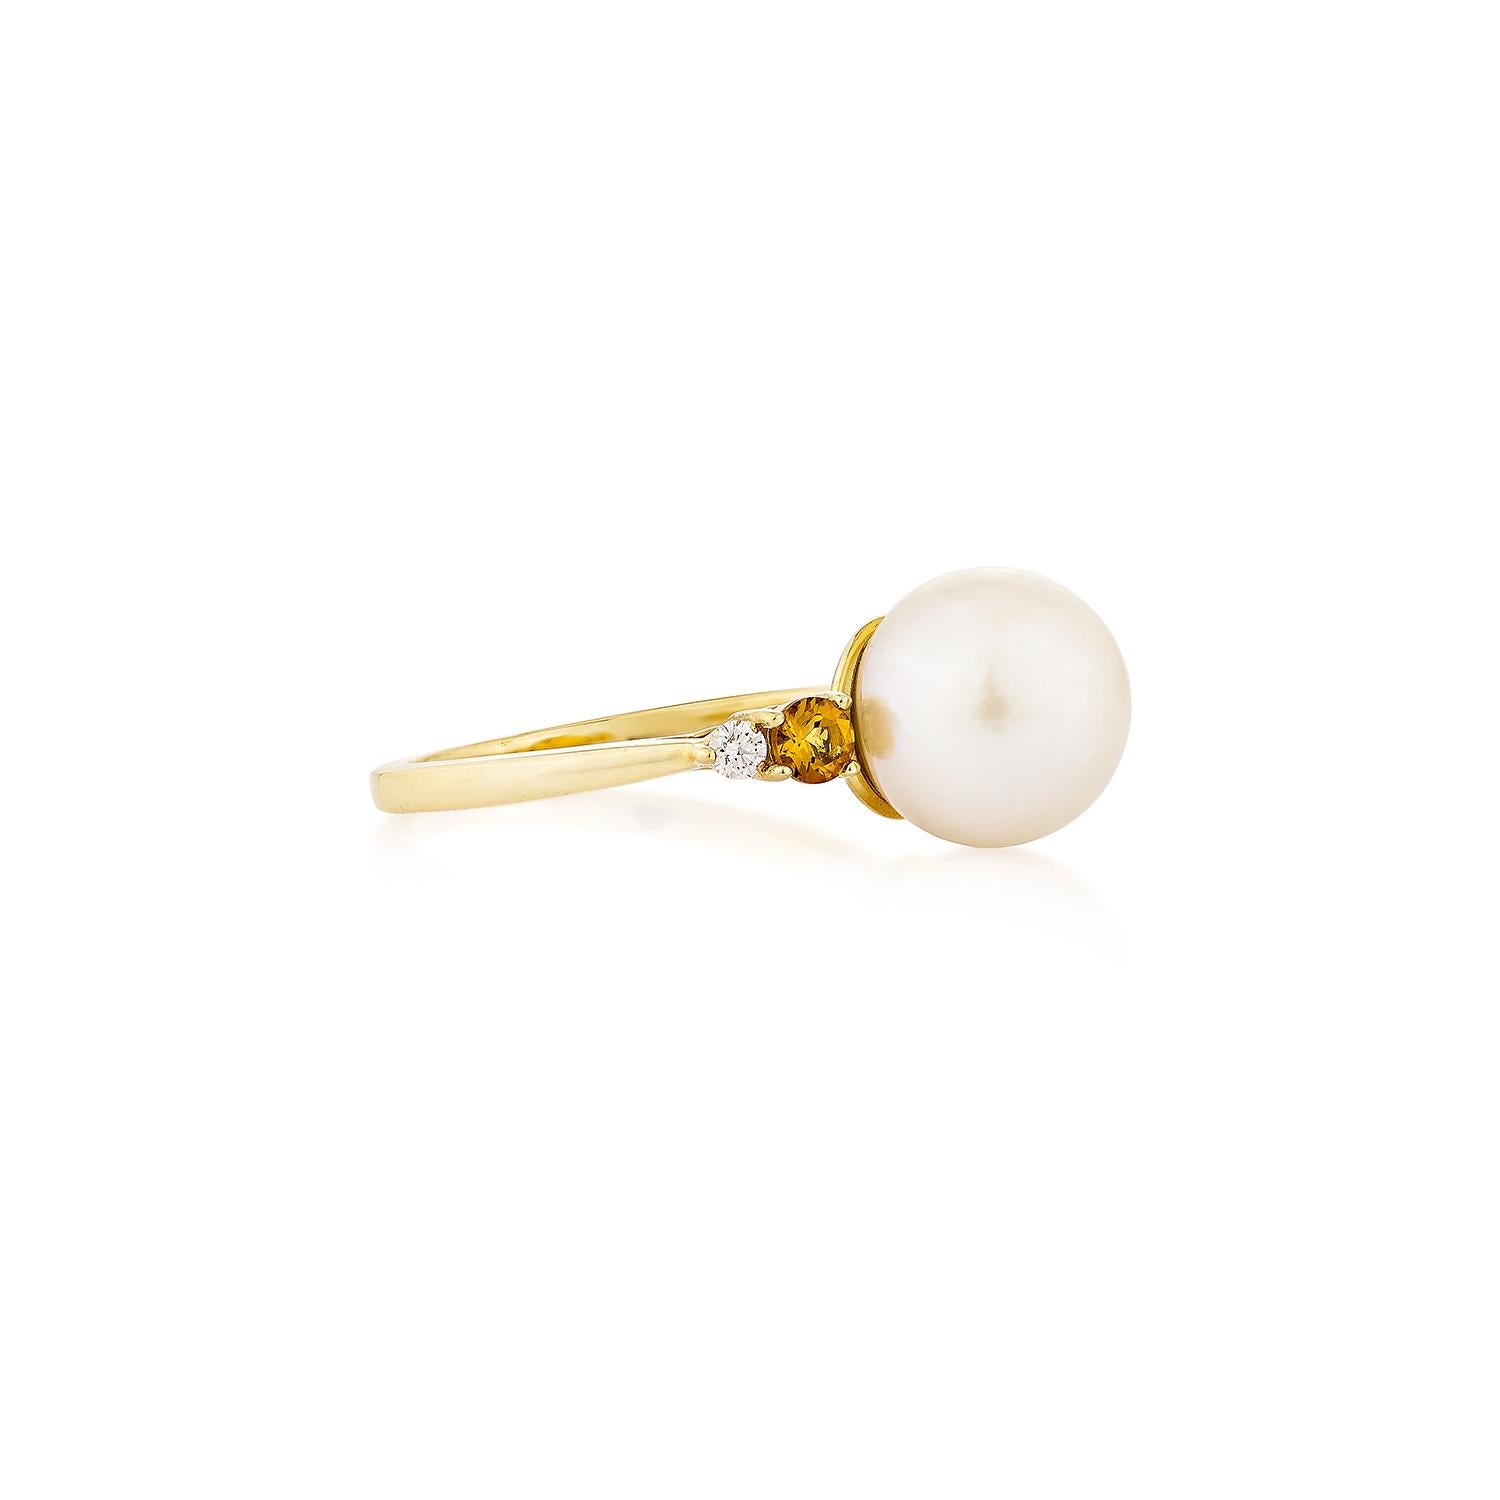 Präsentiert Eine schöne weiße Perle und Citrin Fancy Ring ist perfekt für Menschen, die Qualität schätzen und wollen es zu jedem Anlass oder Feier zu tragen. Der Ring aus Gelbgold mit weißer Perle, einem Citrin und einem weißen Diamanten bietet ein